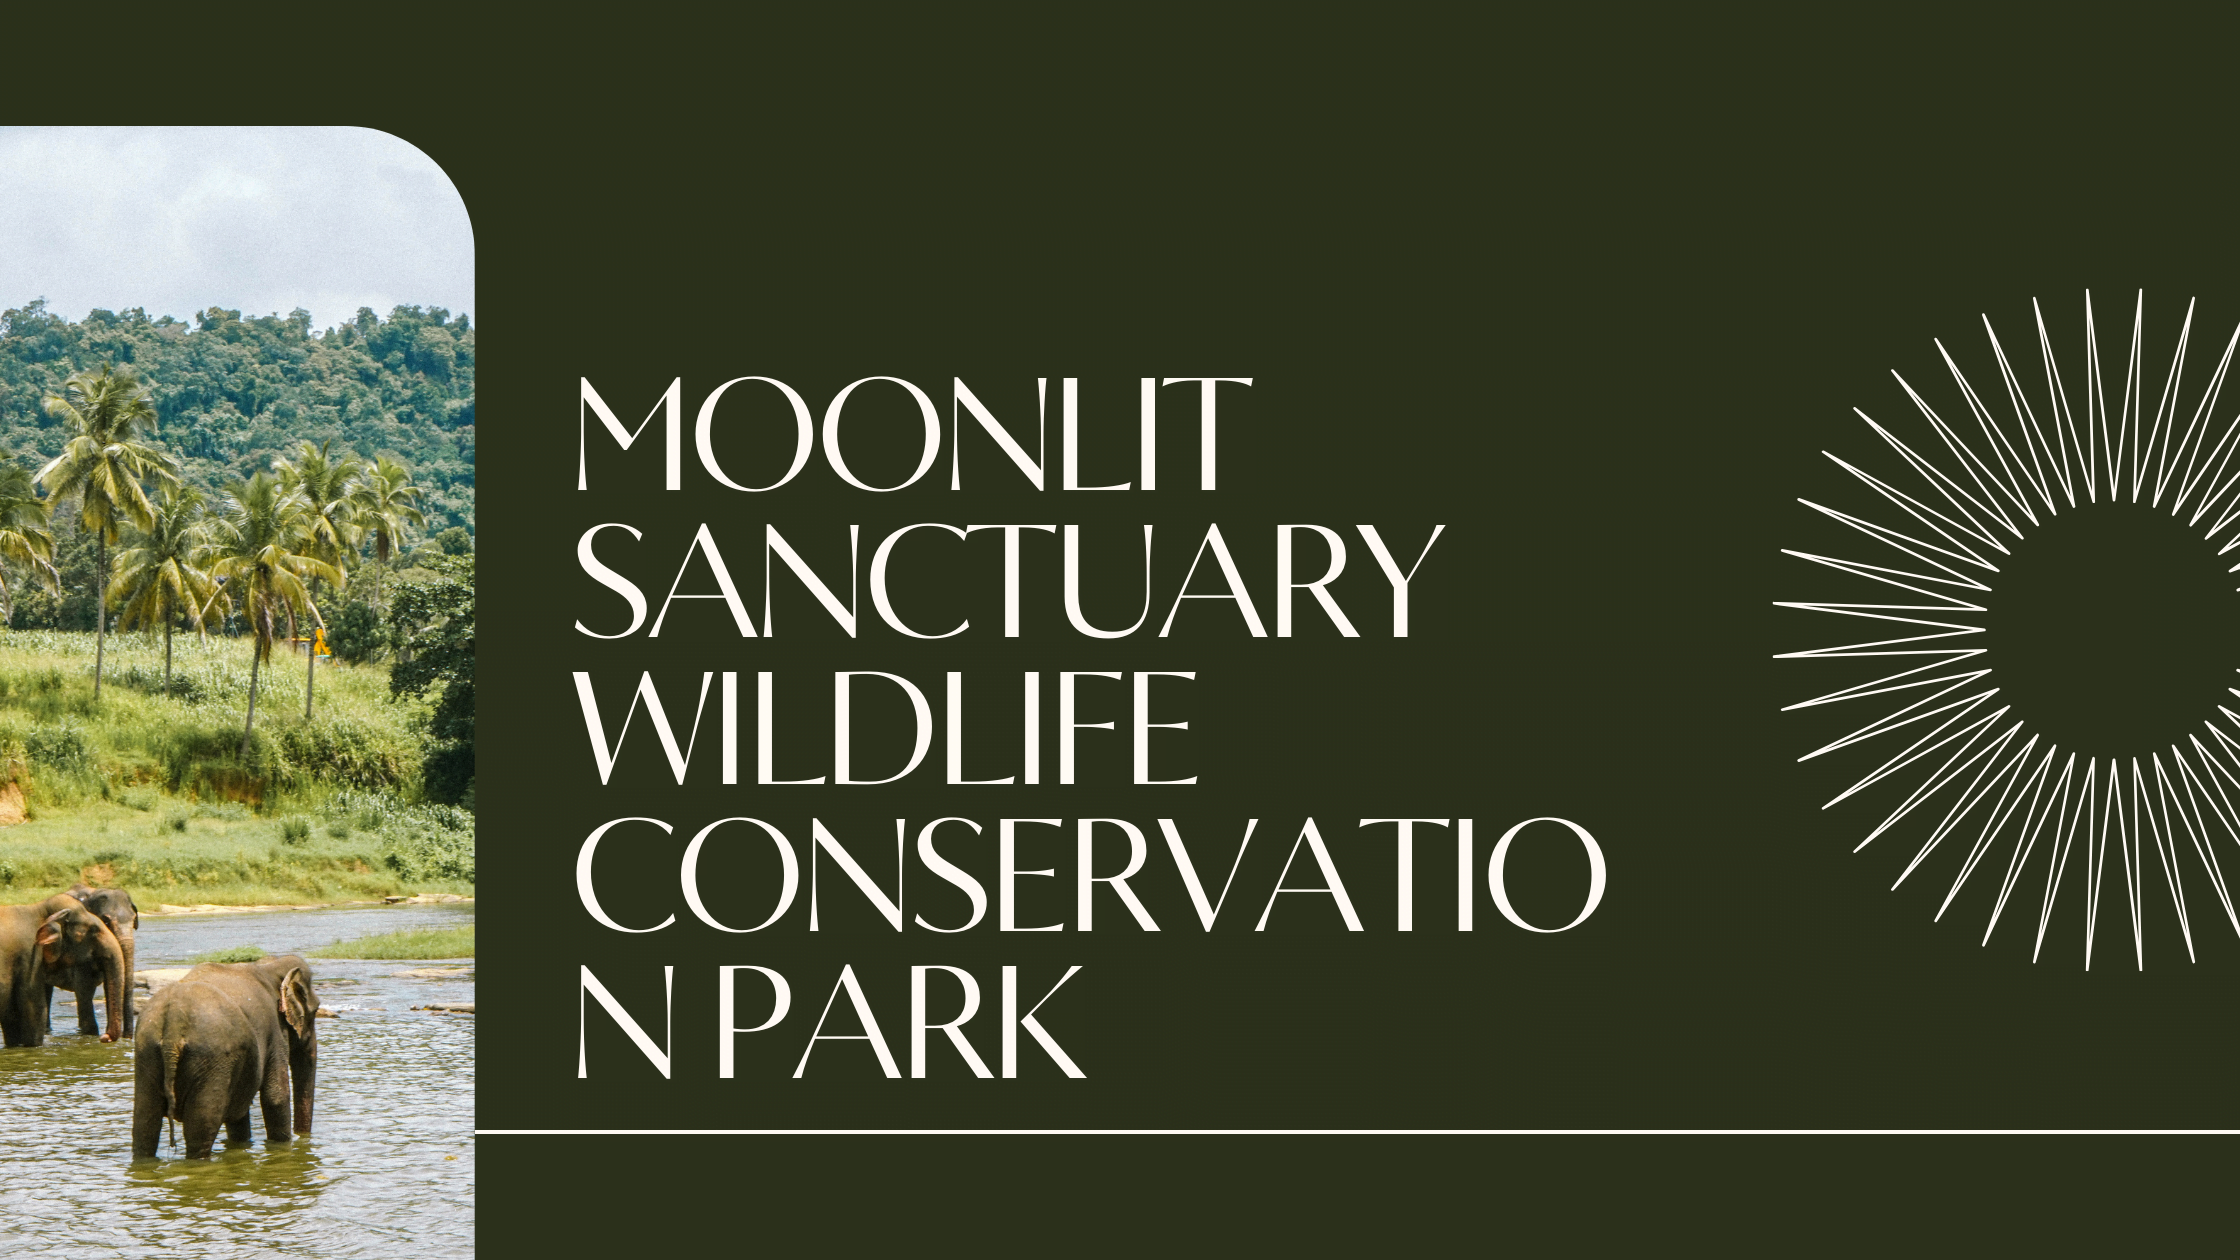 Moonlit Sanctuary Wildlife Conservation Park